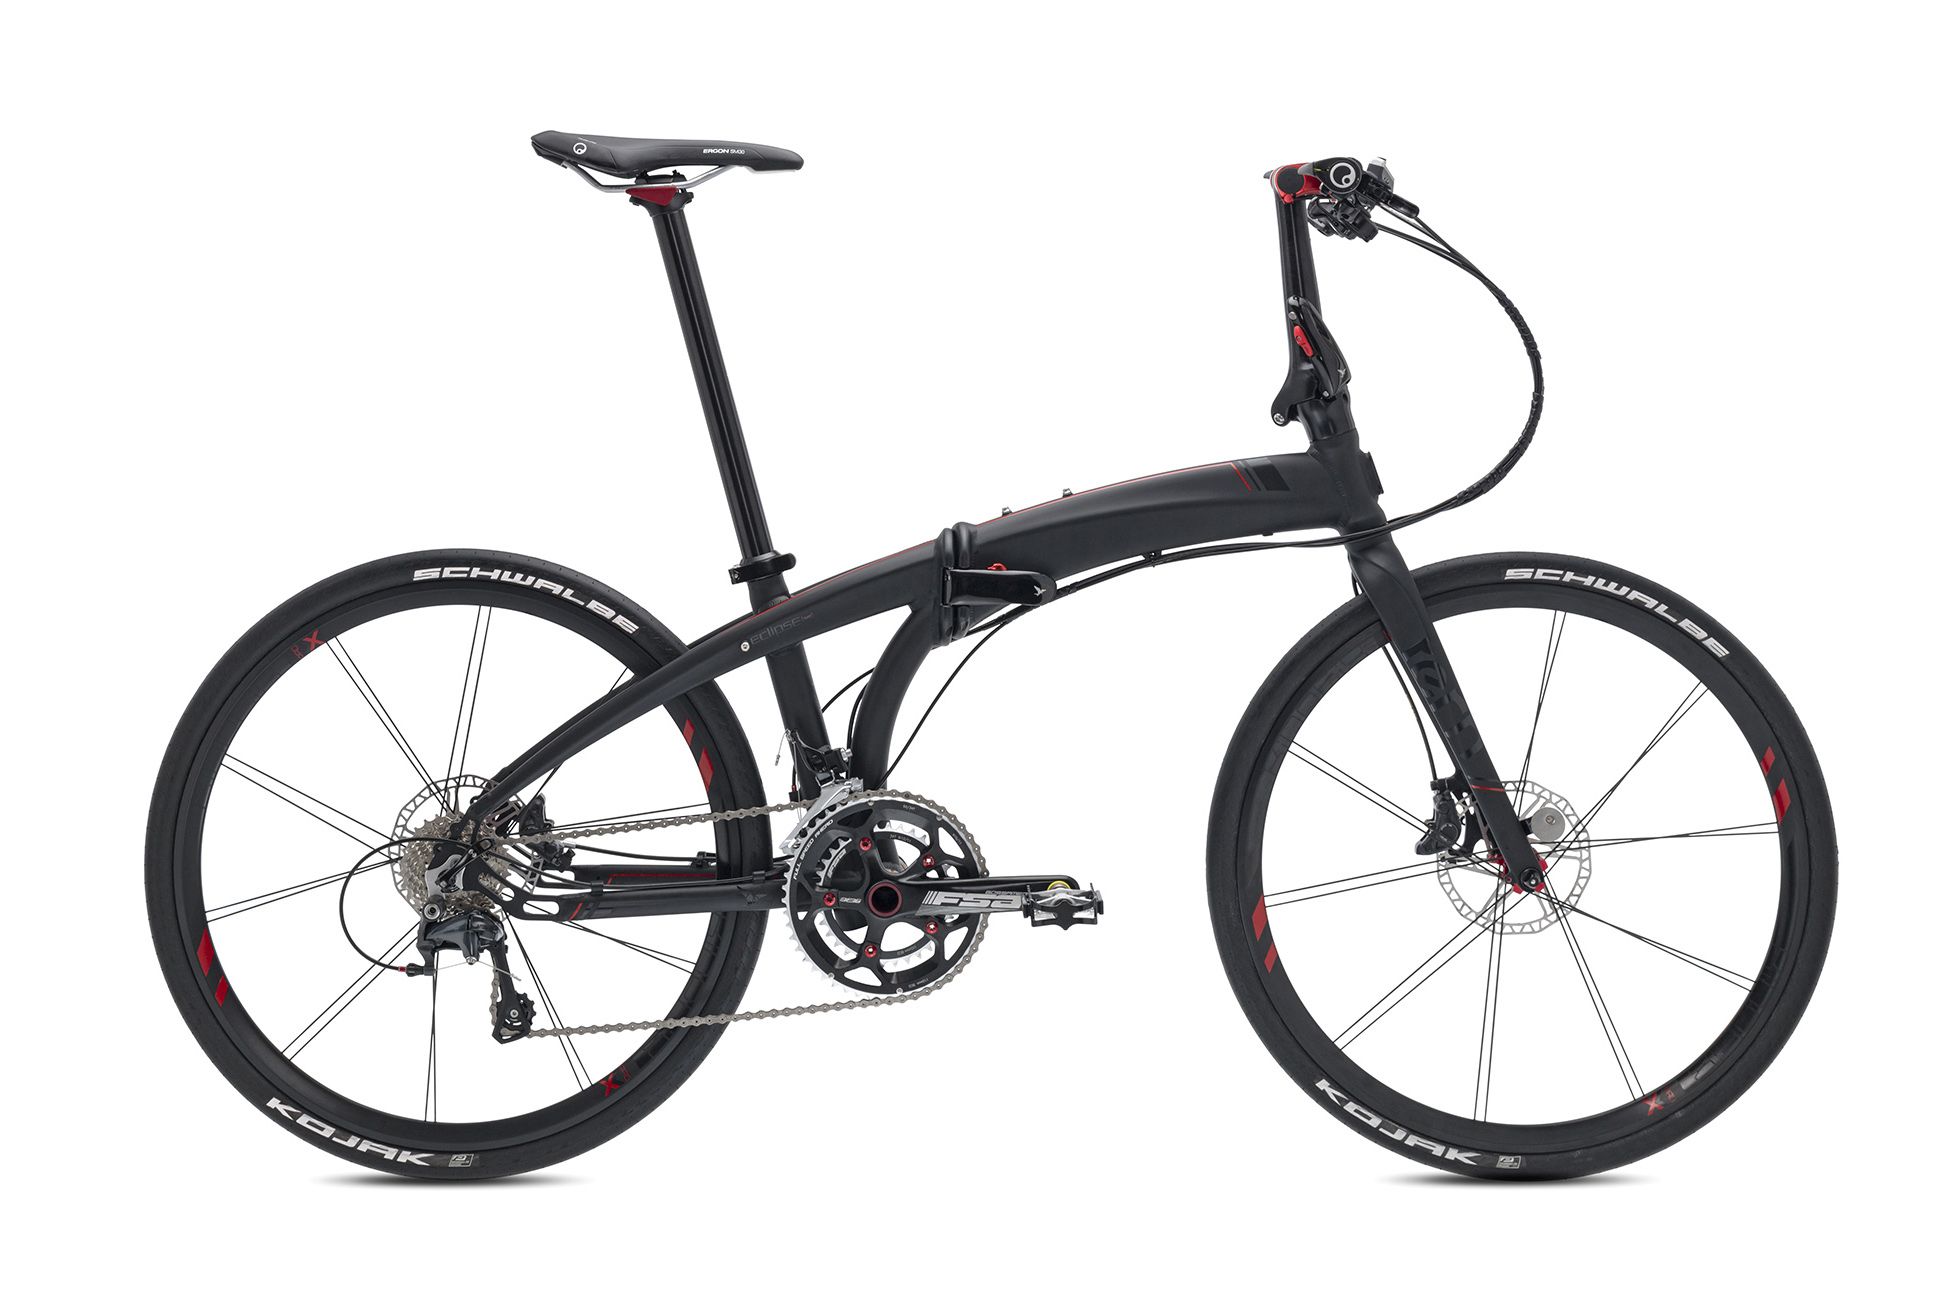  Отзывы о Складном велосипеде Tern Eclipse X22 2016